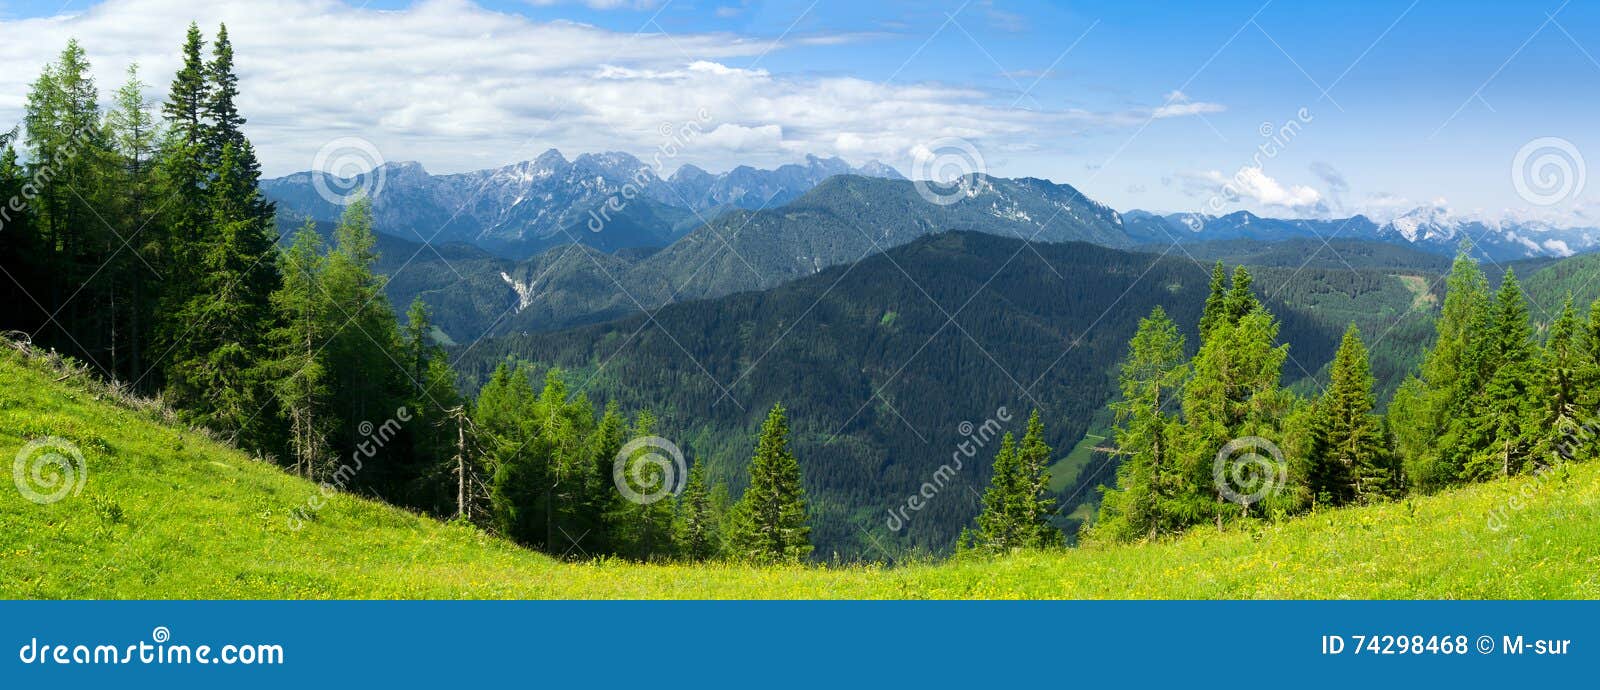 alps in slovenia